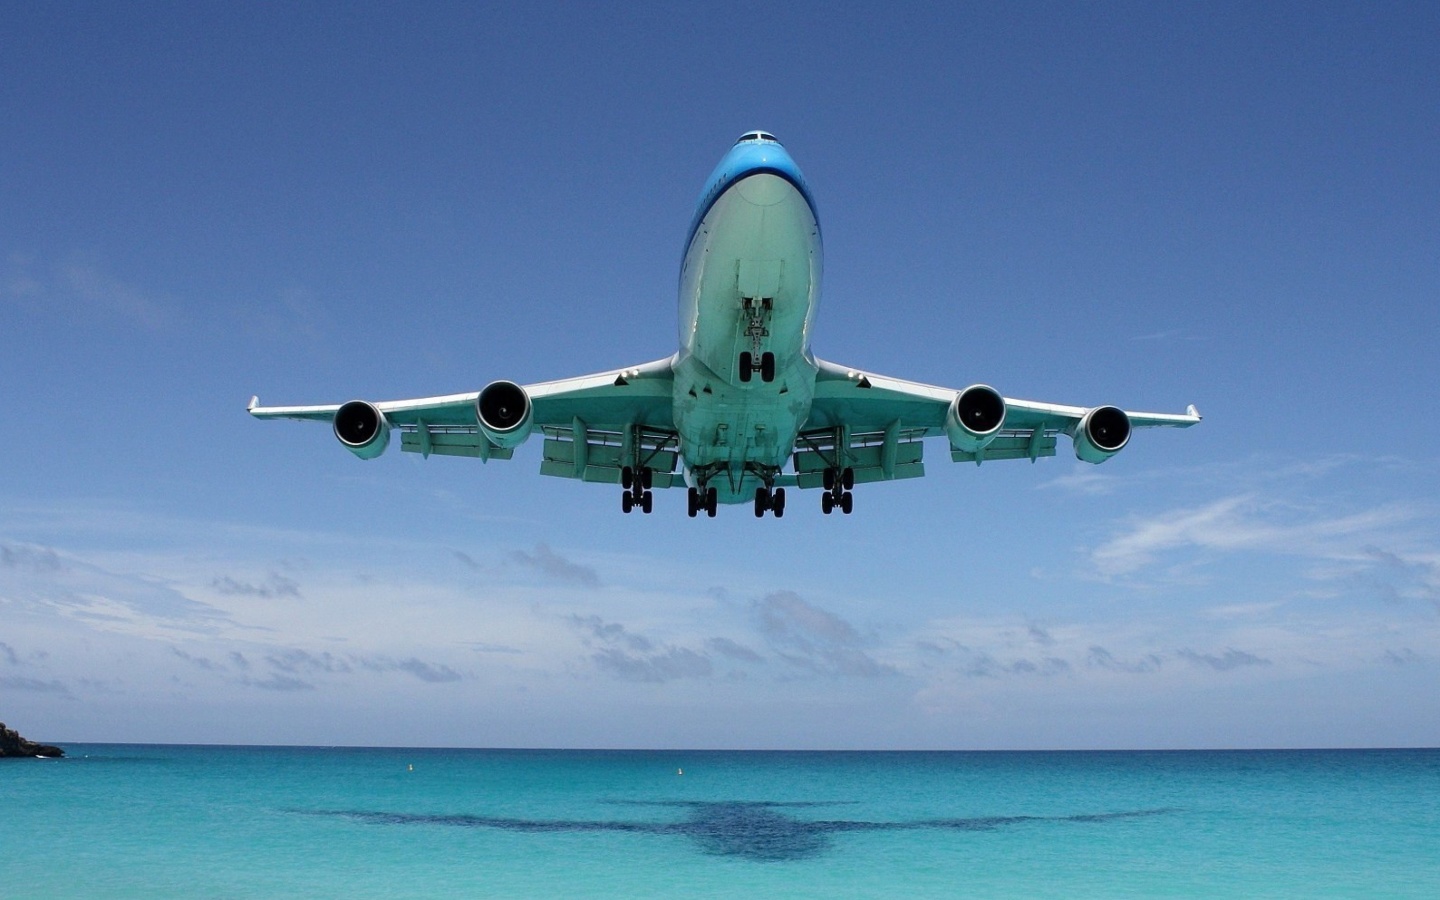 Das Boeing 747 in St Maarten Extreme Airport Wallpaper 1440x900